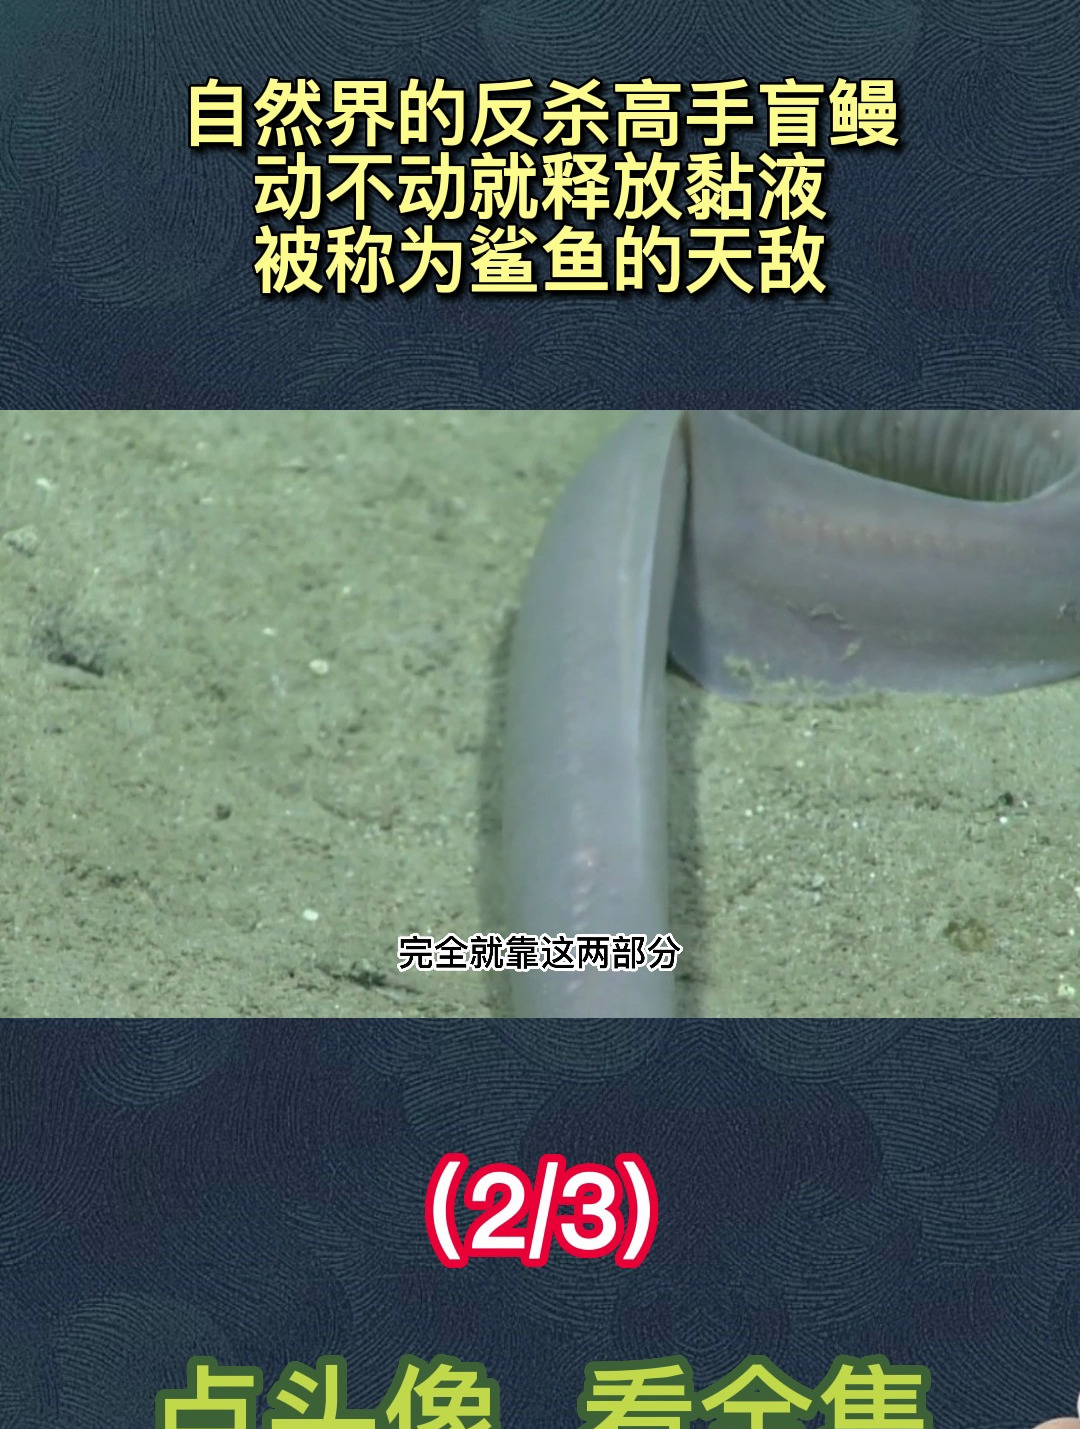 自然界的反杀高手盲鳗,动不动就释放黏液,被称为鲨鱼的天敌